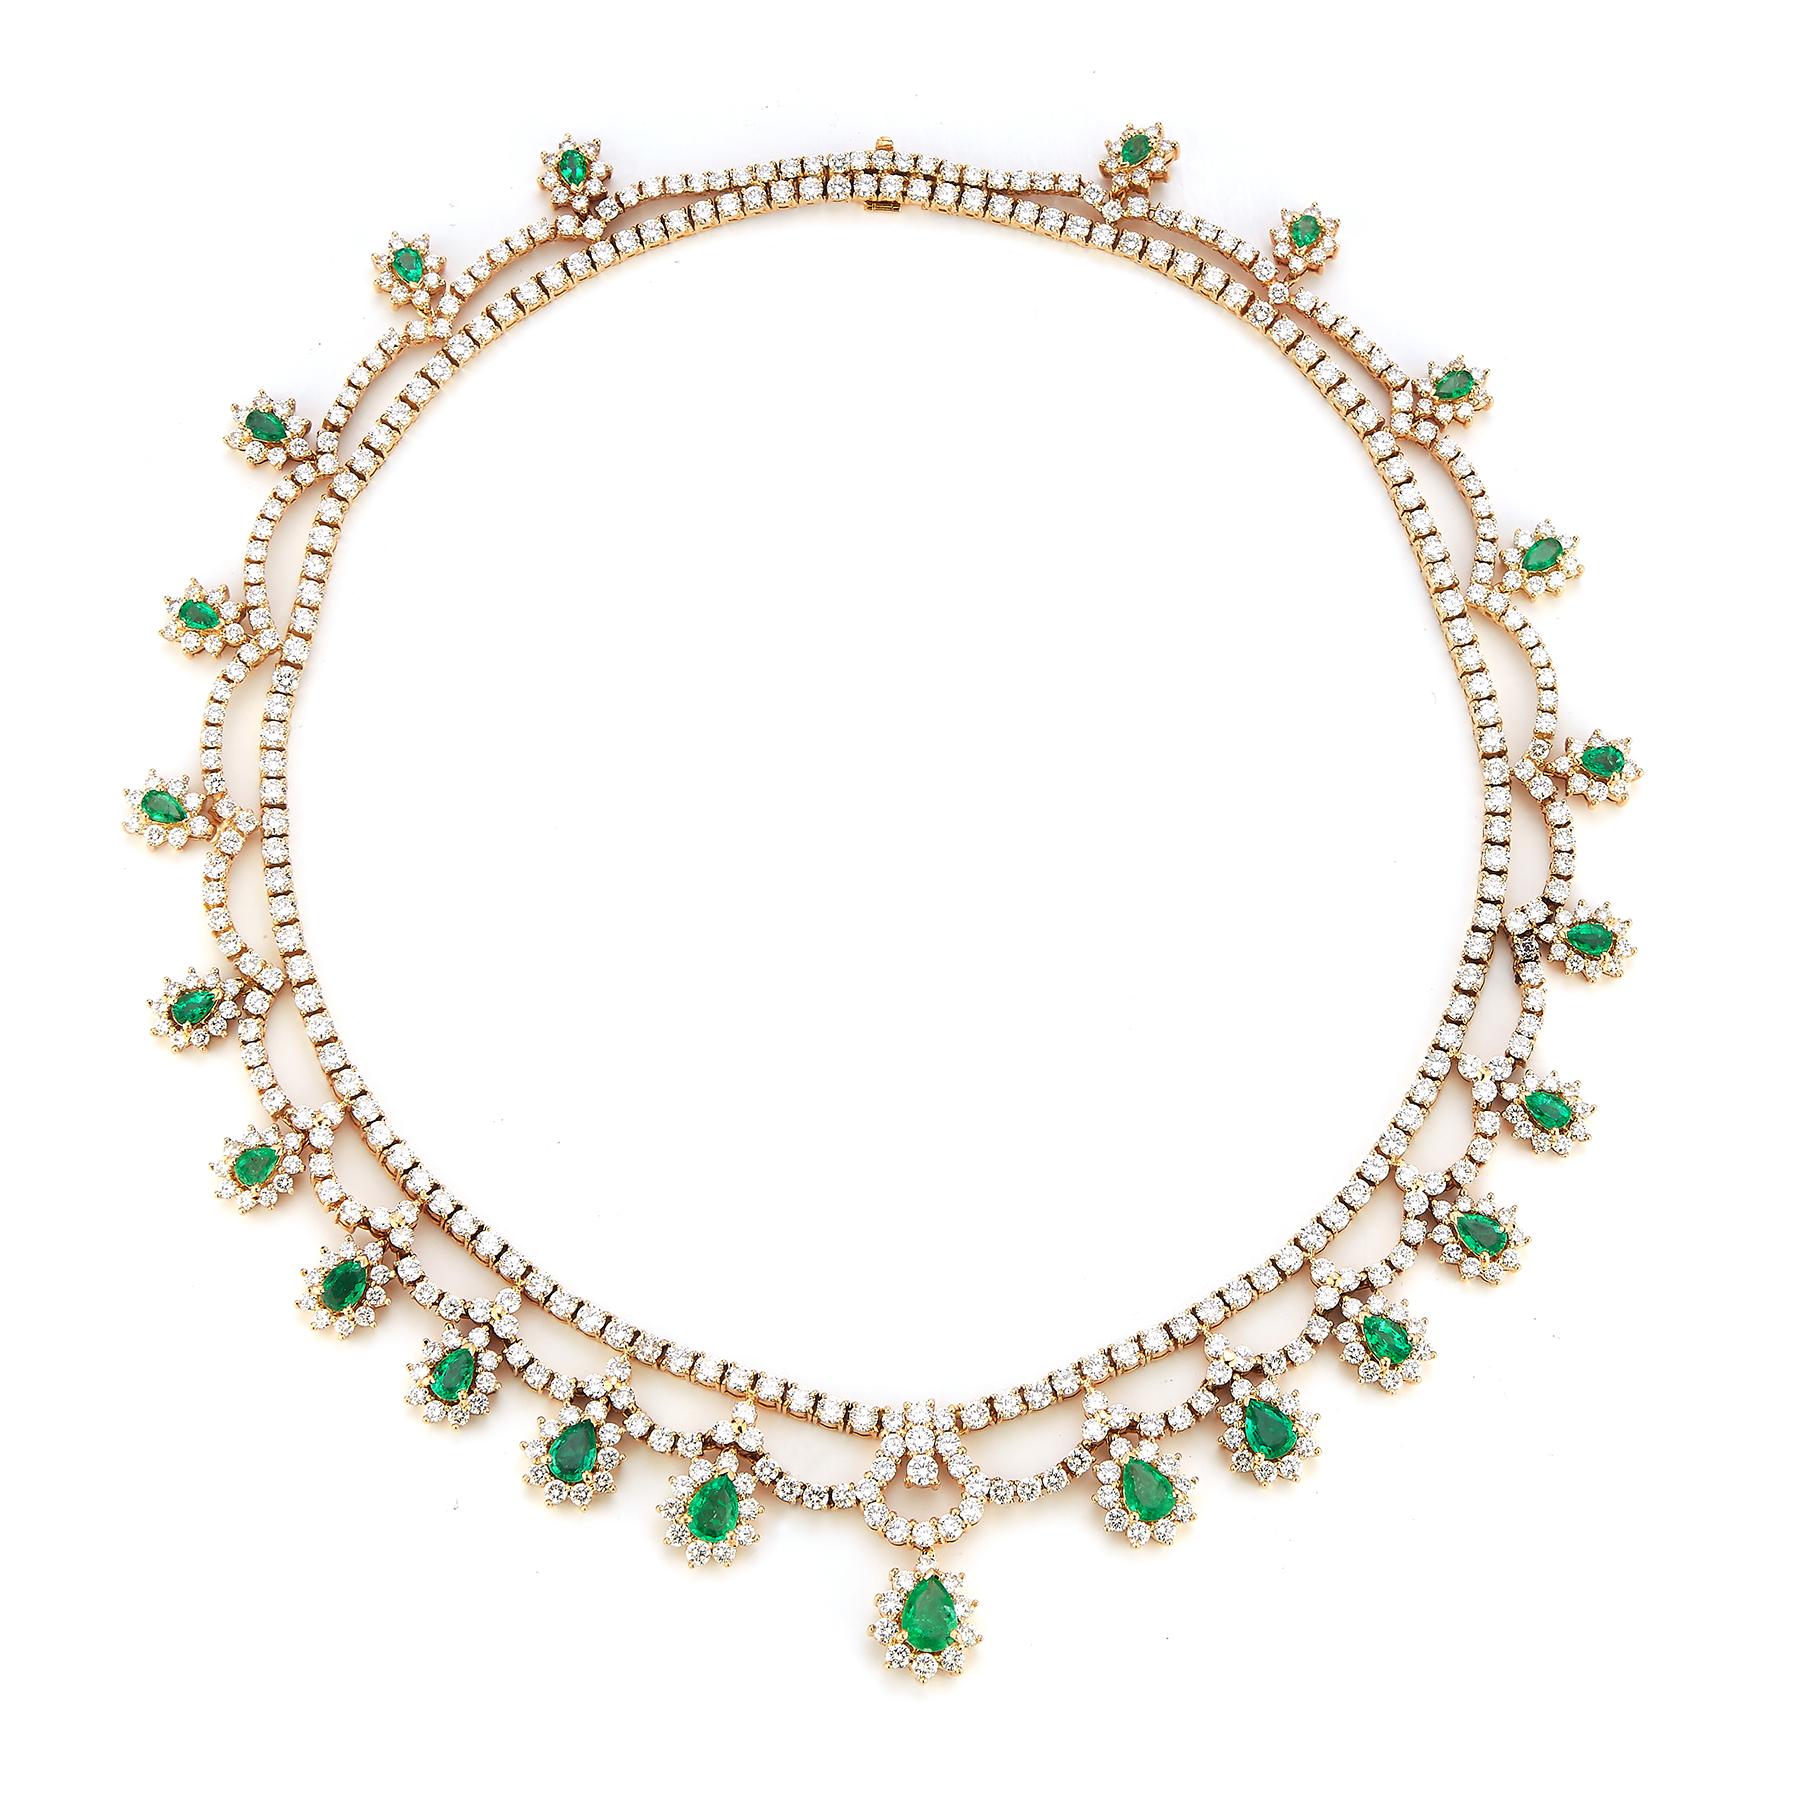 Prächtige Smaragd- und Diamant-Halskette
Smaragd-Halskette mit 23 birnenförmigen Smaragden von ca. 9,60 ct.  
538 runde Diamanten von etwa 28,45 Karat 
18k Gelbgold

Abmessungen: 16